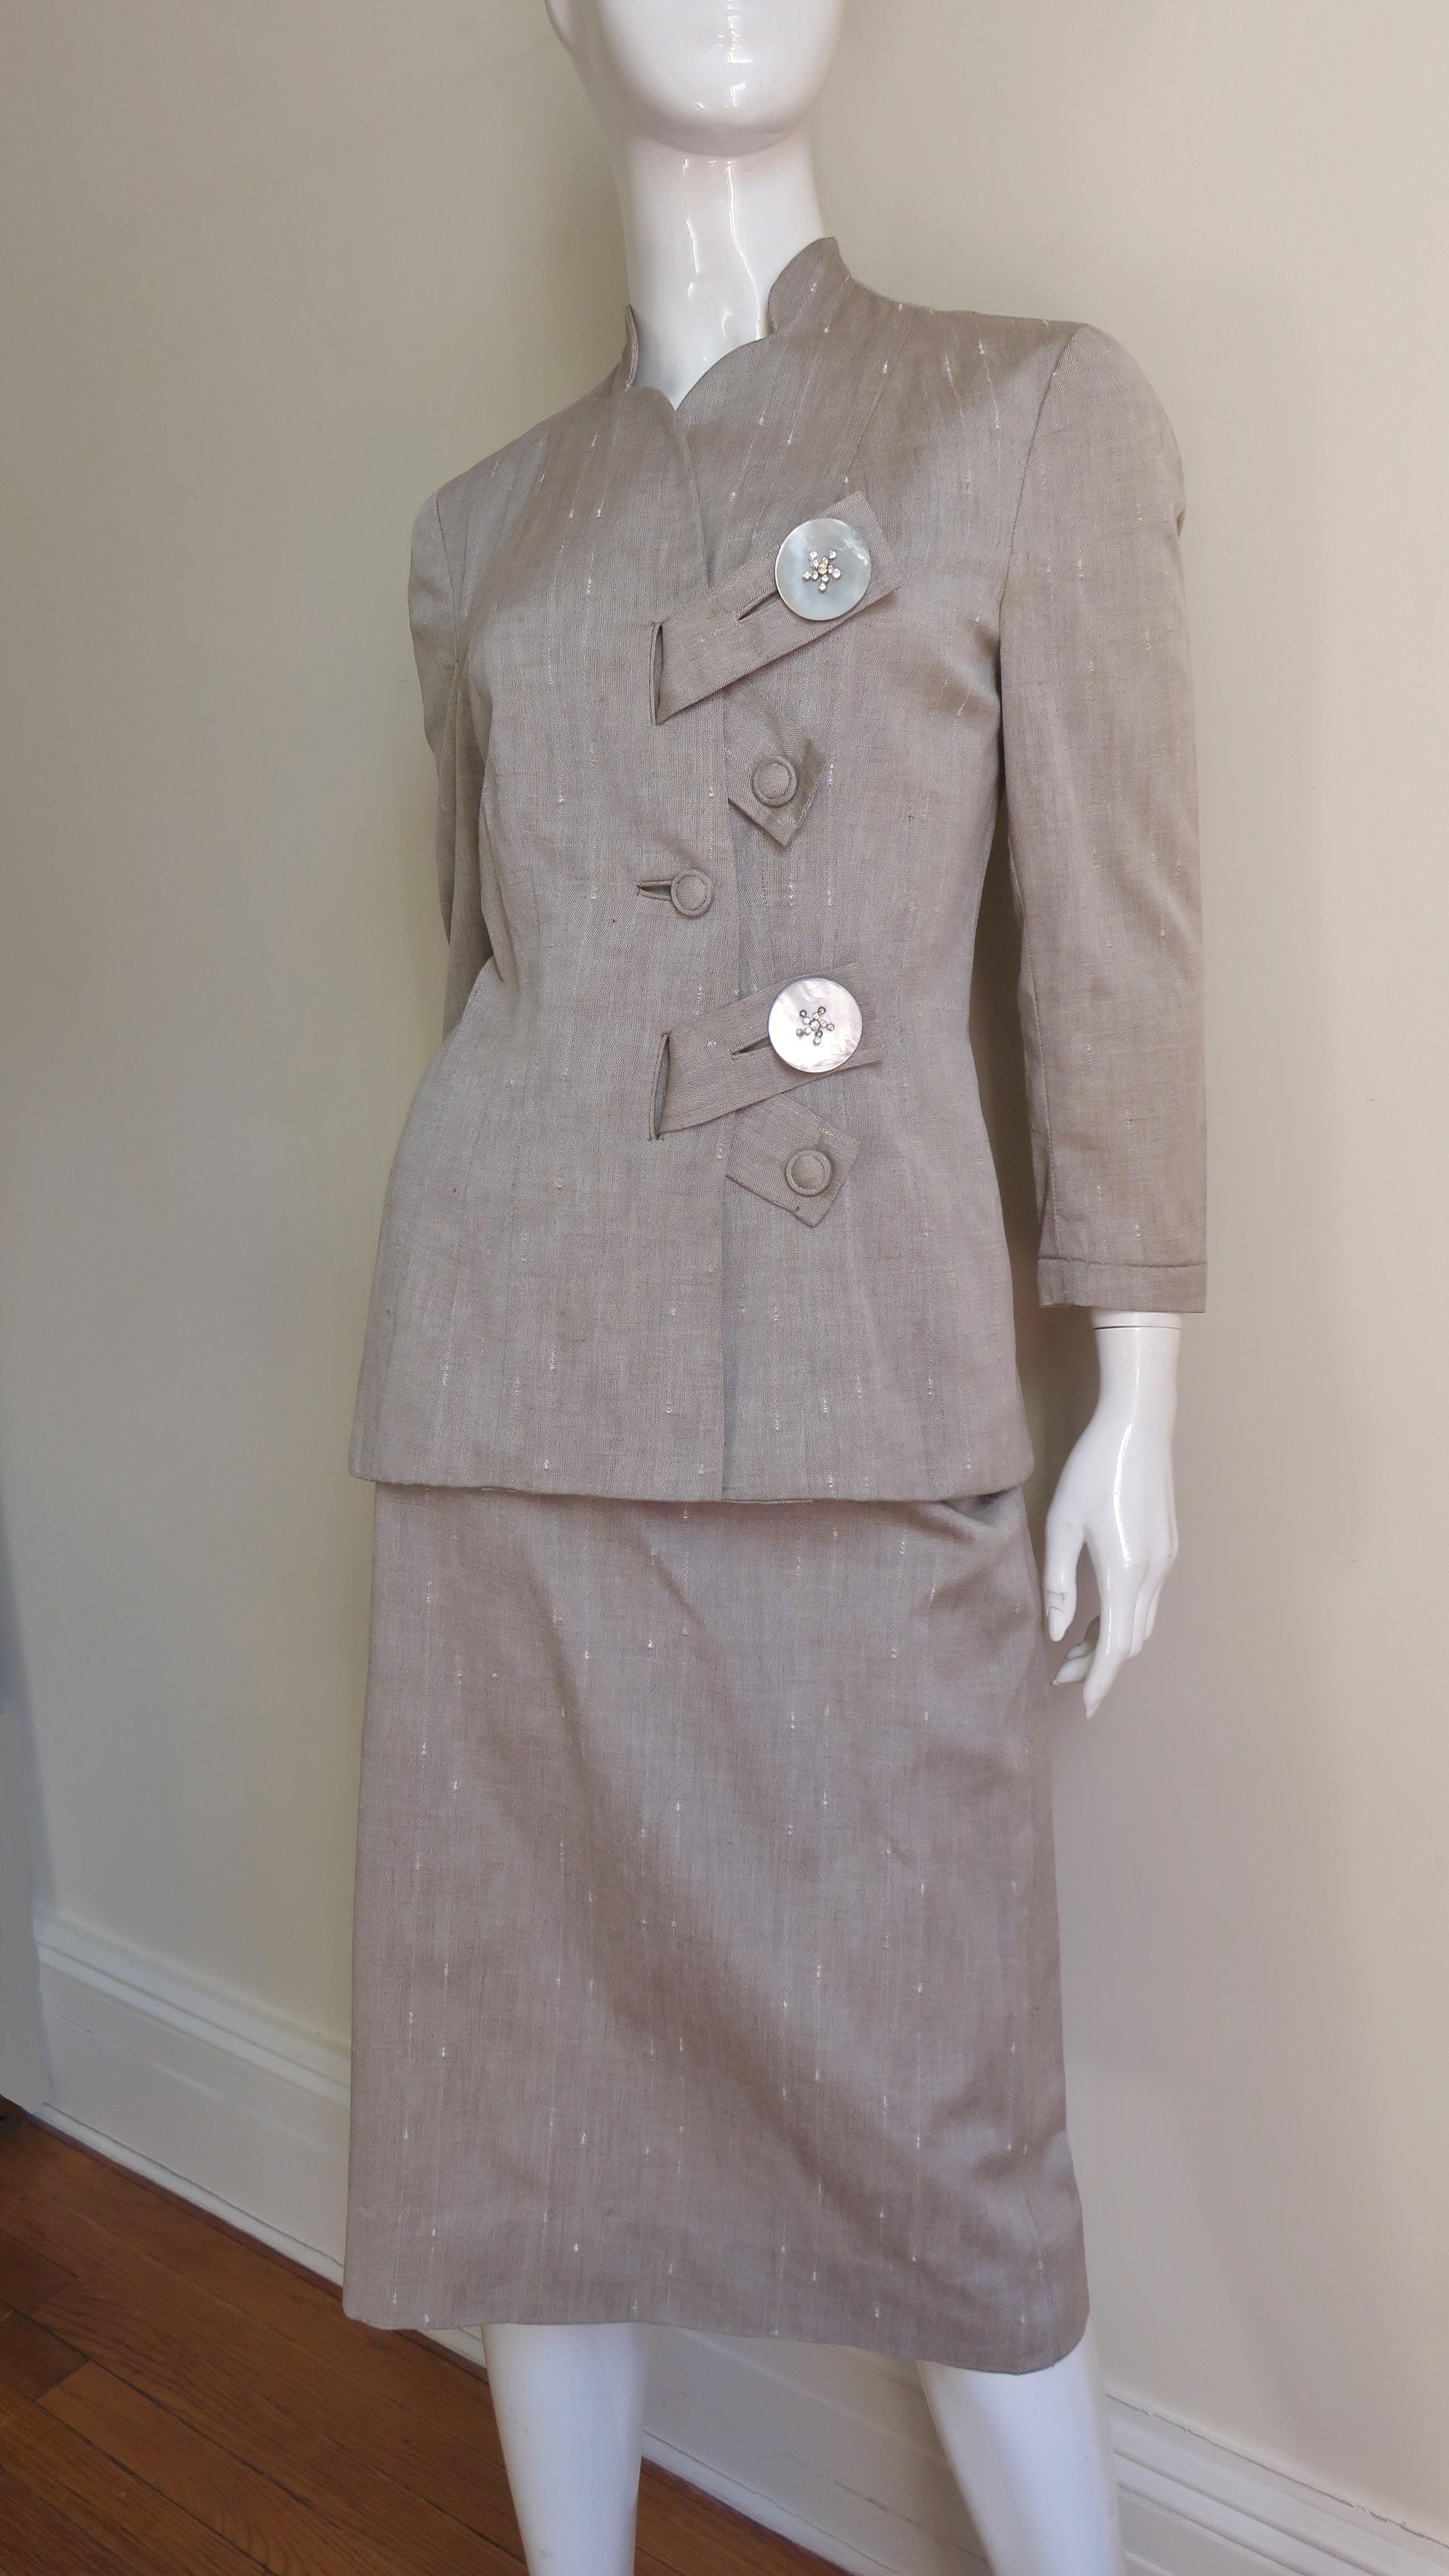 Ein fabelhafter Anzug von Eisenberg Originals aus taupefarbenem Leinen-Baumwoll-Gemisch.  Es hat 3/4-Ärmel und einen einzigartigen Verschluss auf der Vorderseite mit diagonalen Laschen und  wunderschöne Perlmuttknöpfe mit kleineren, selbstklebenden